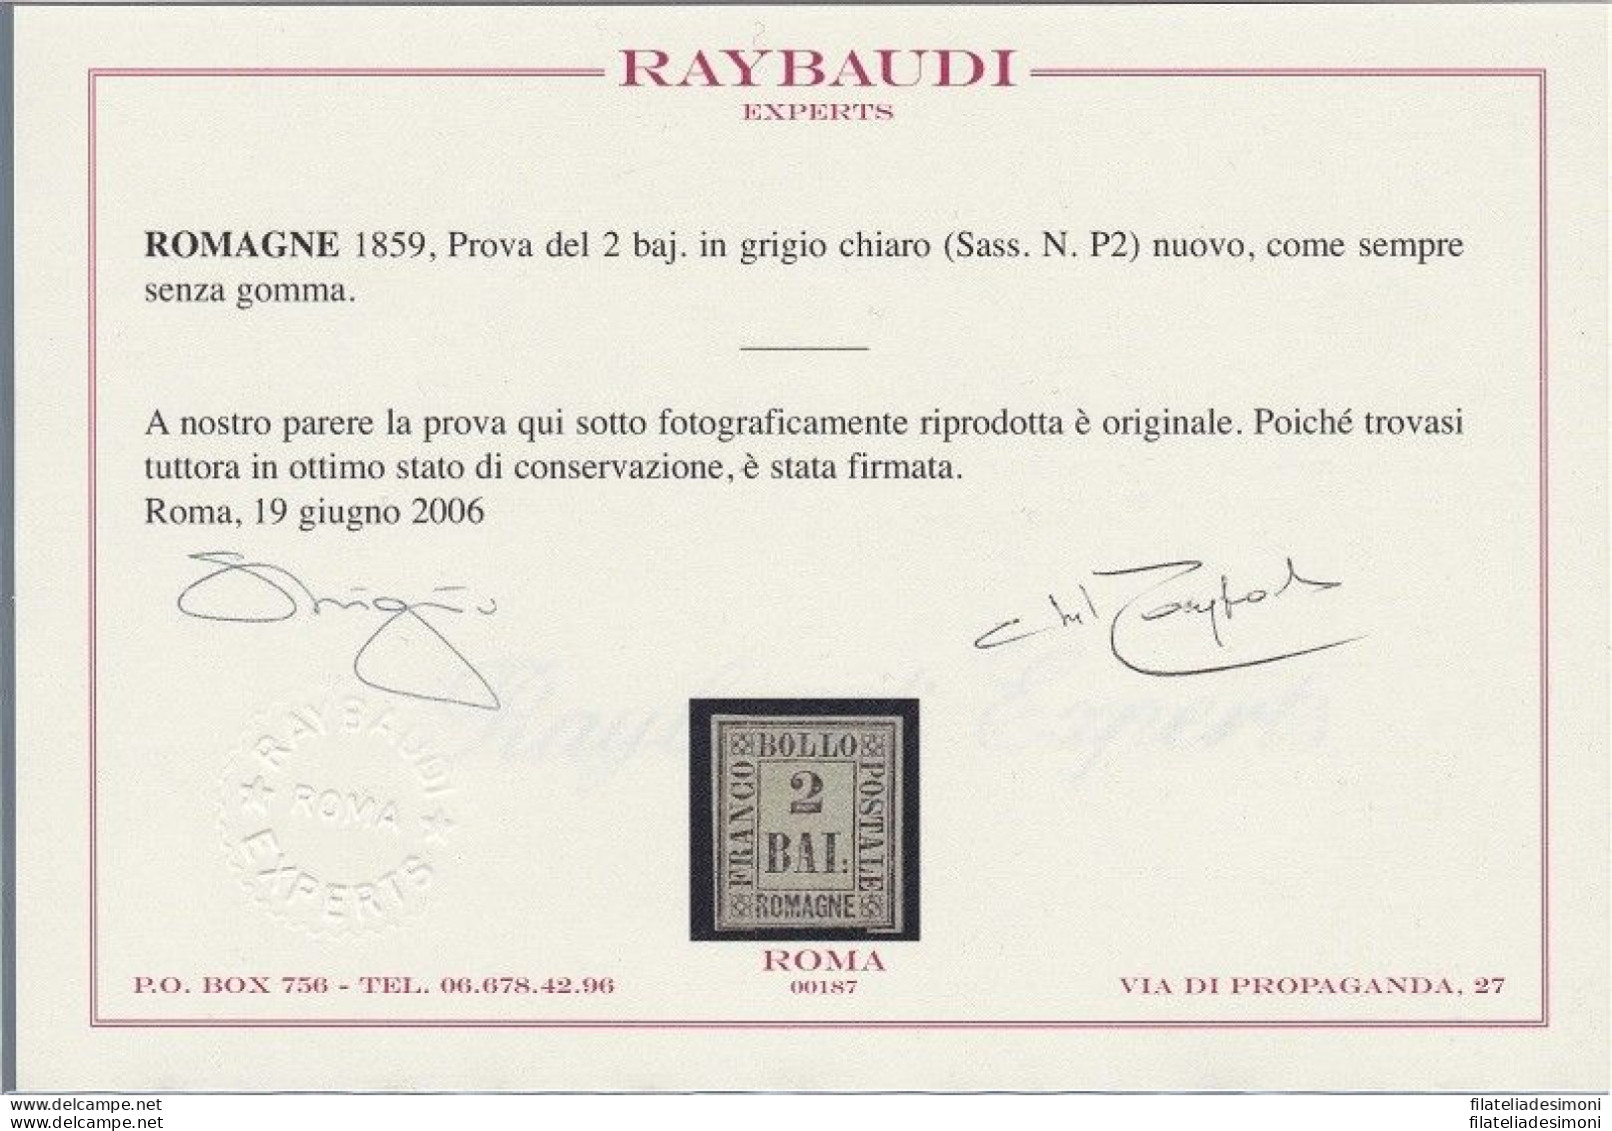 1859 Romagne, Prova Del 2 Baj (P2) EMESSO SENZA GOMMA Certificato Raybaudi - Romagna